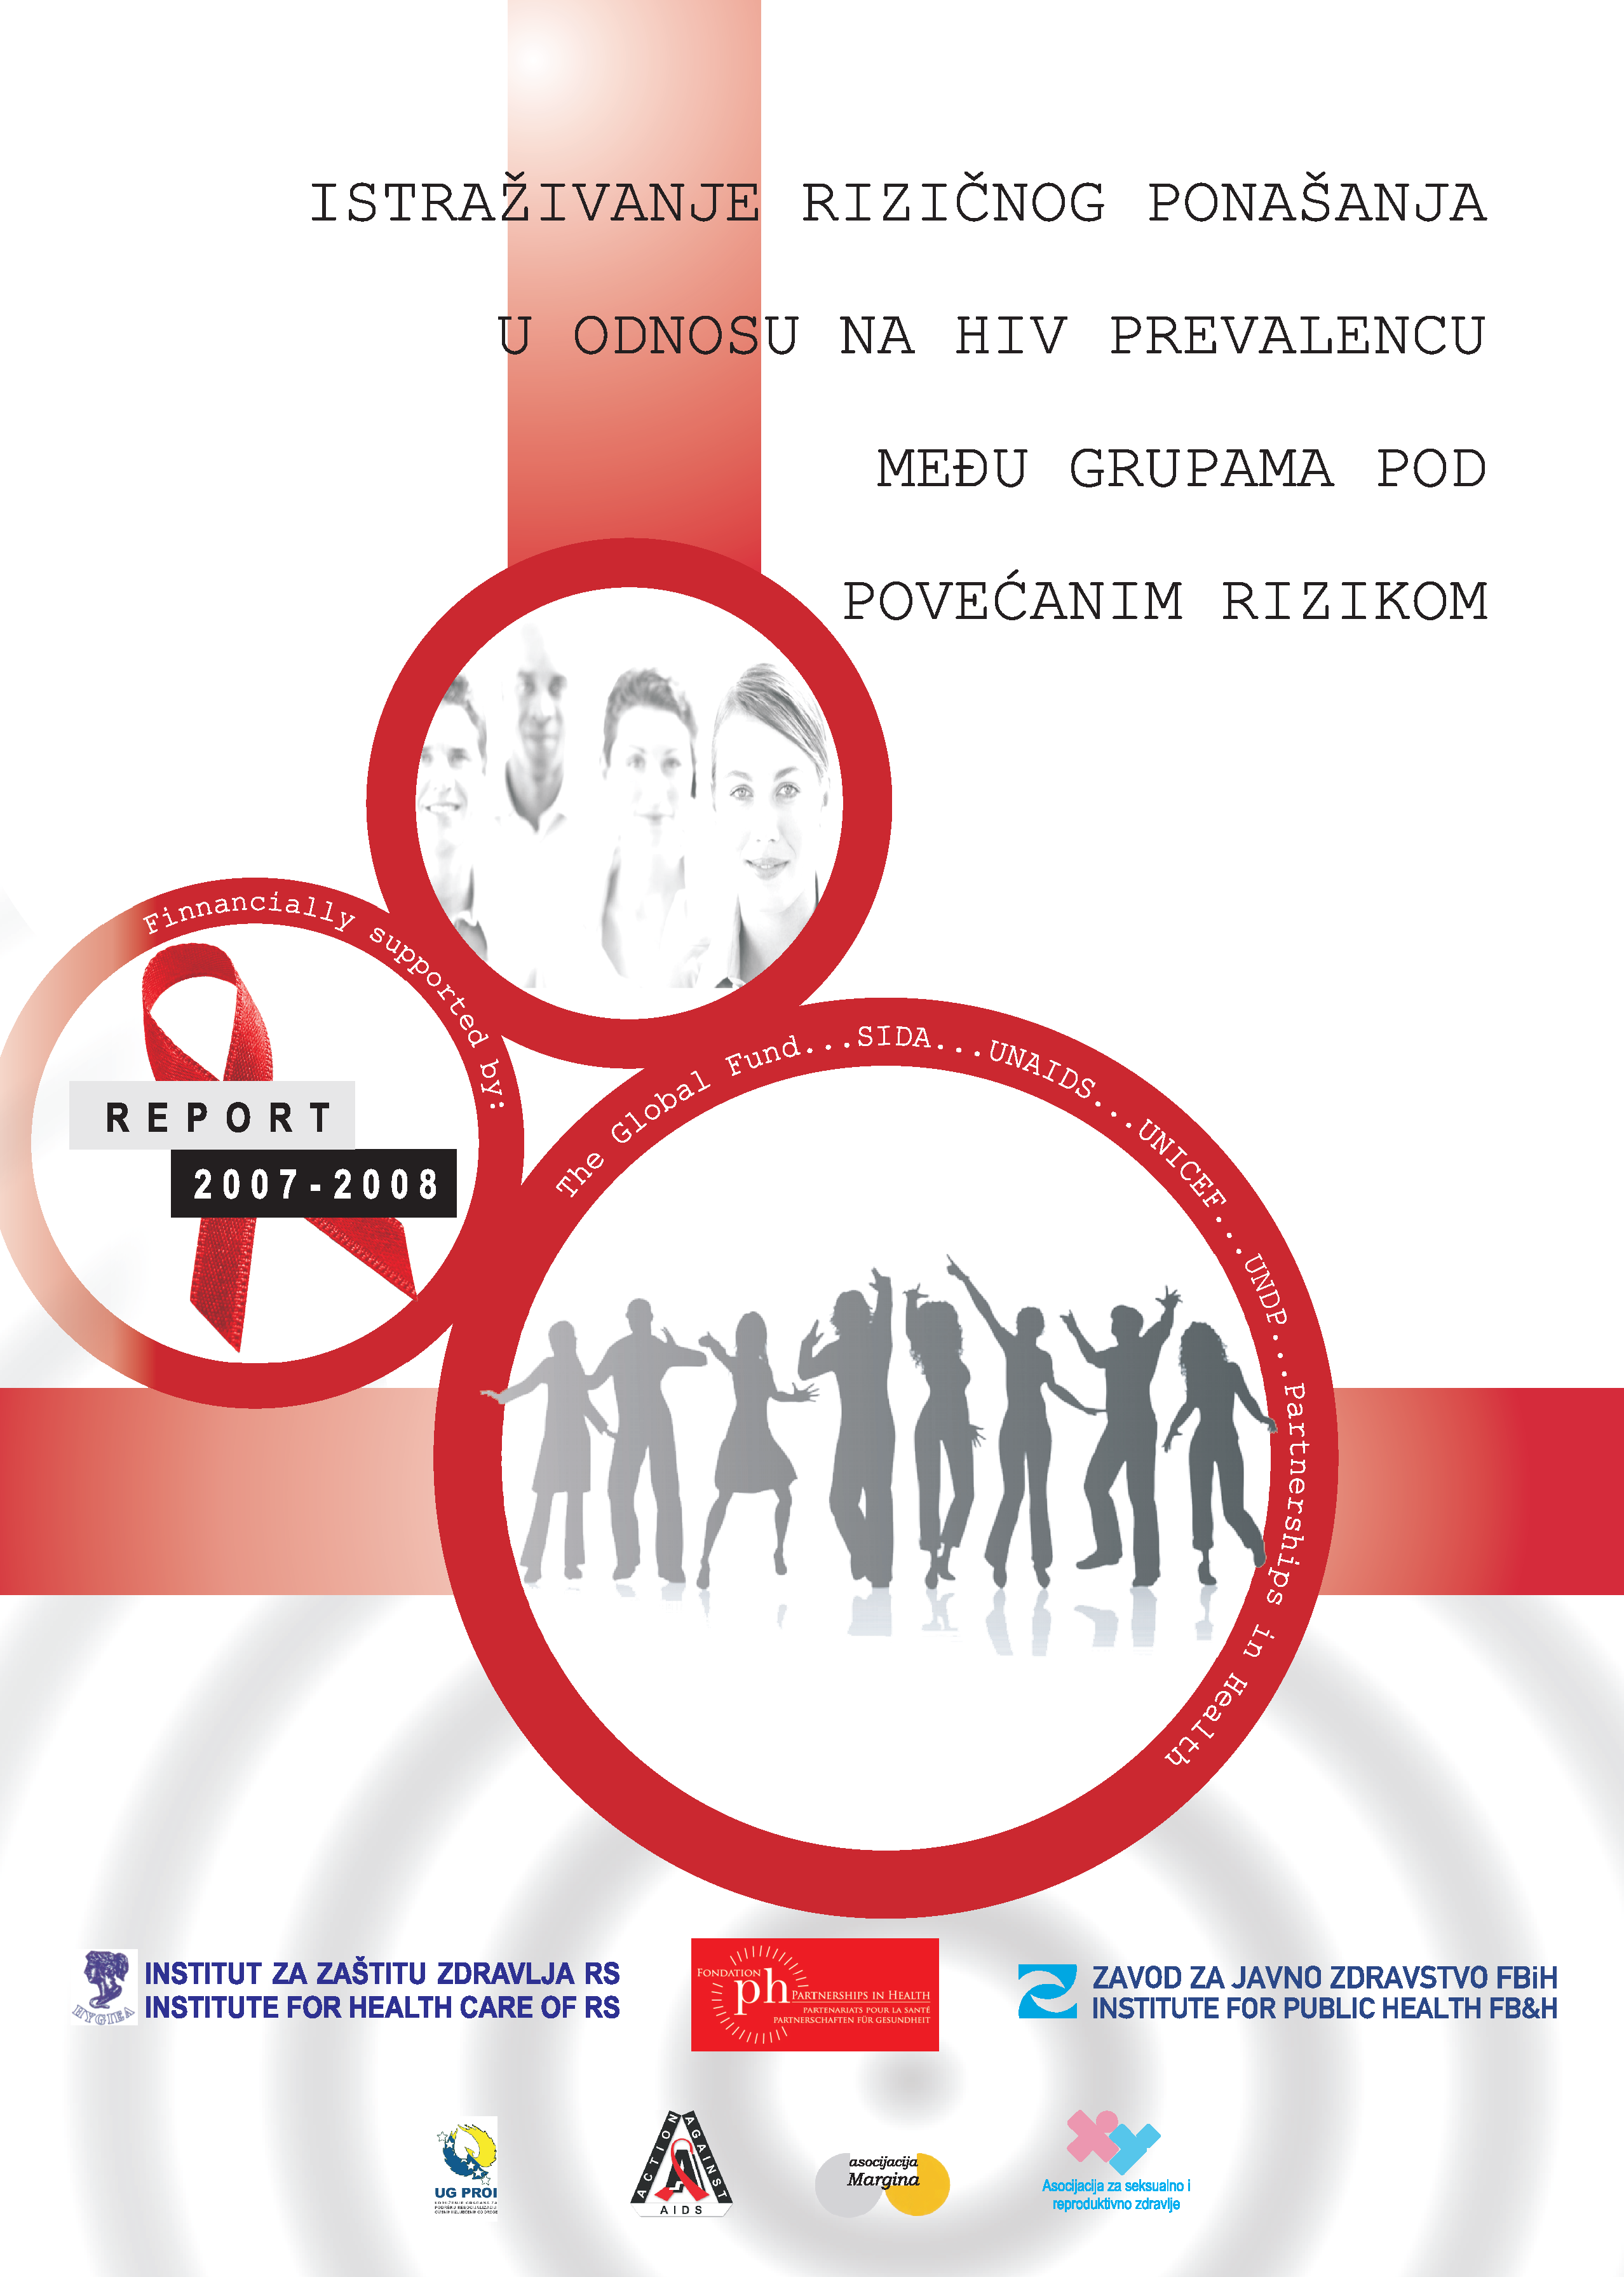 Istraživanje rizičnog ponašanja u odnosu na HIV prevalencu među grupama pod povećanim rizikom, 2008.